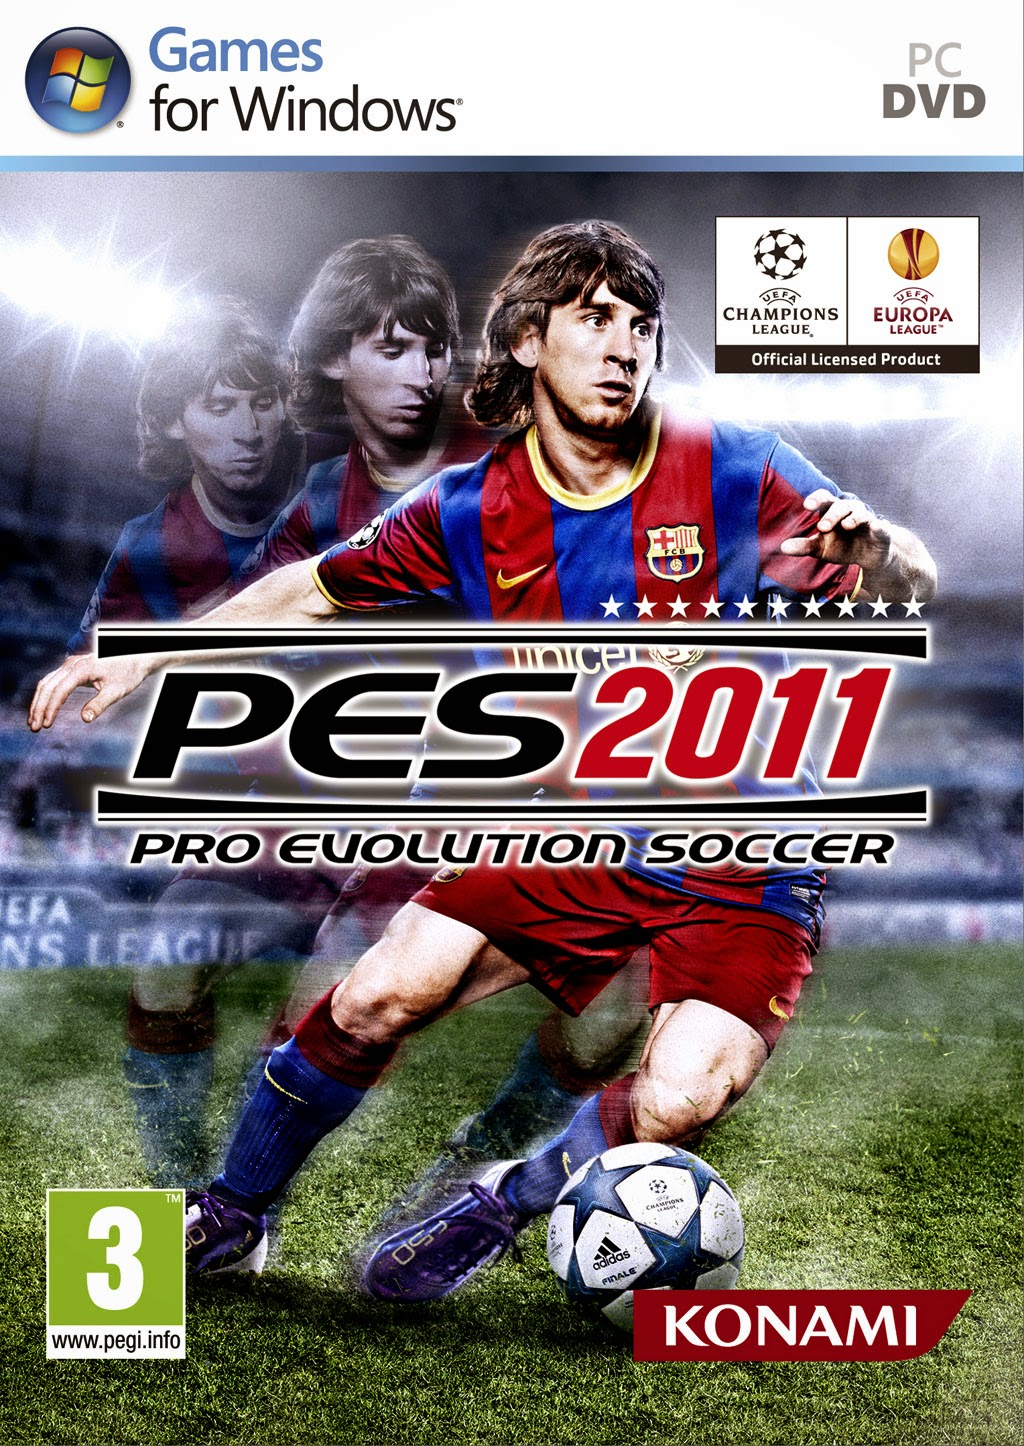 Representações dos jogos (a) Actua Soccer ® (1995) e (b) Pro Evolution